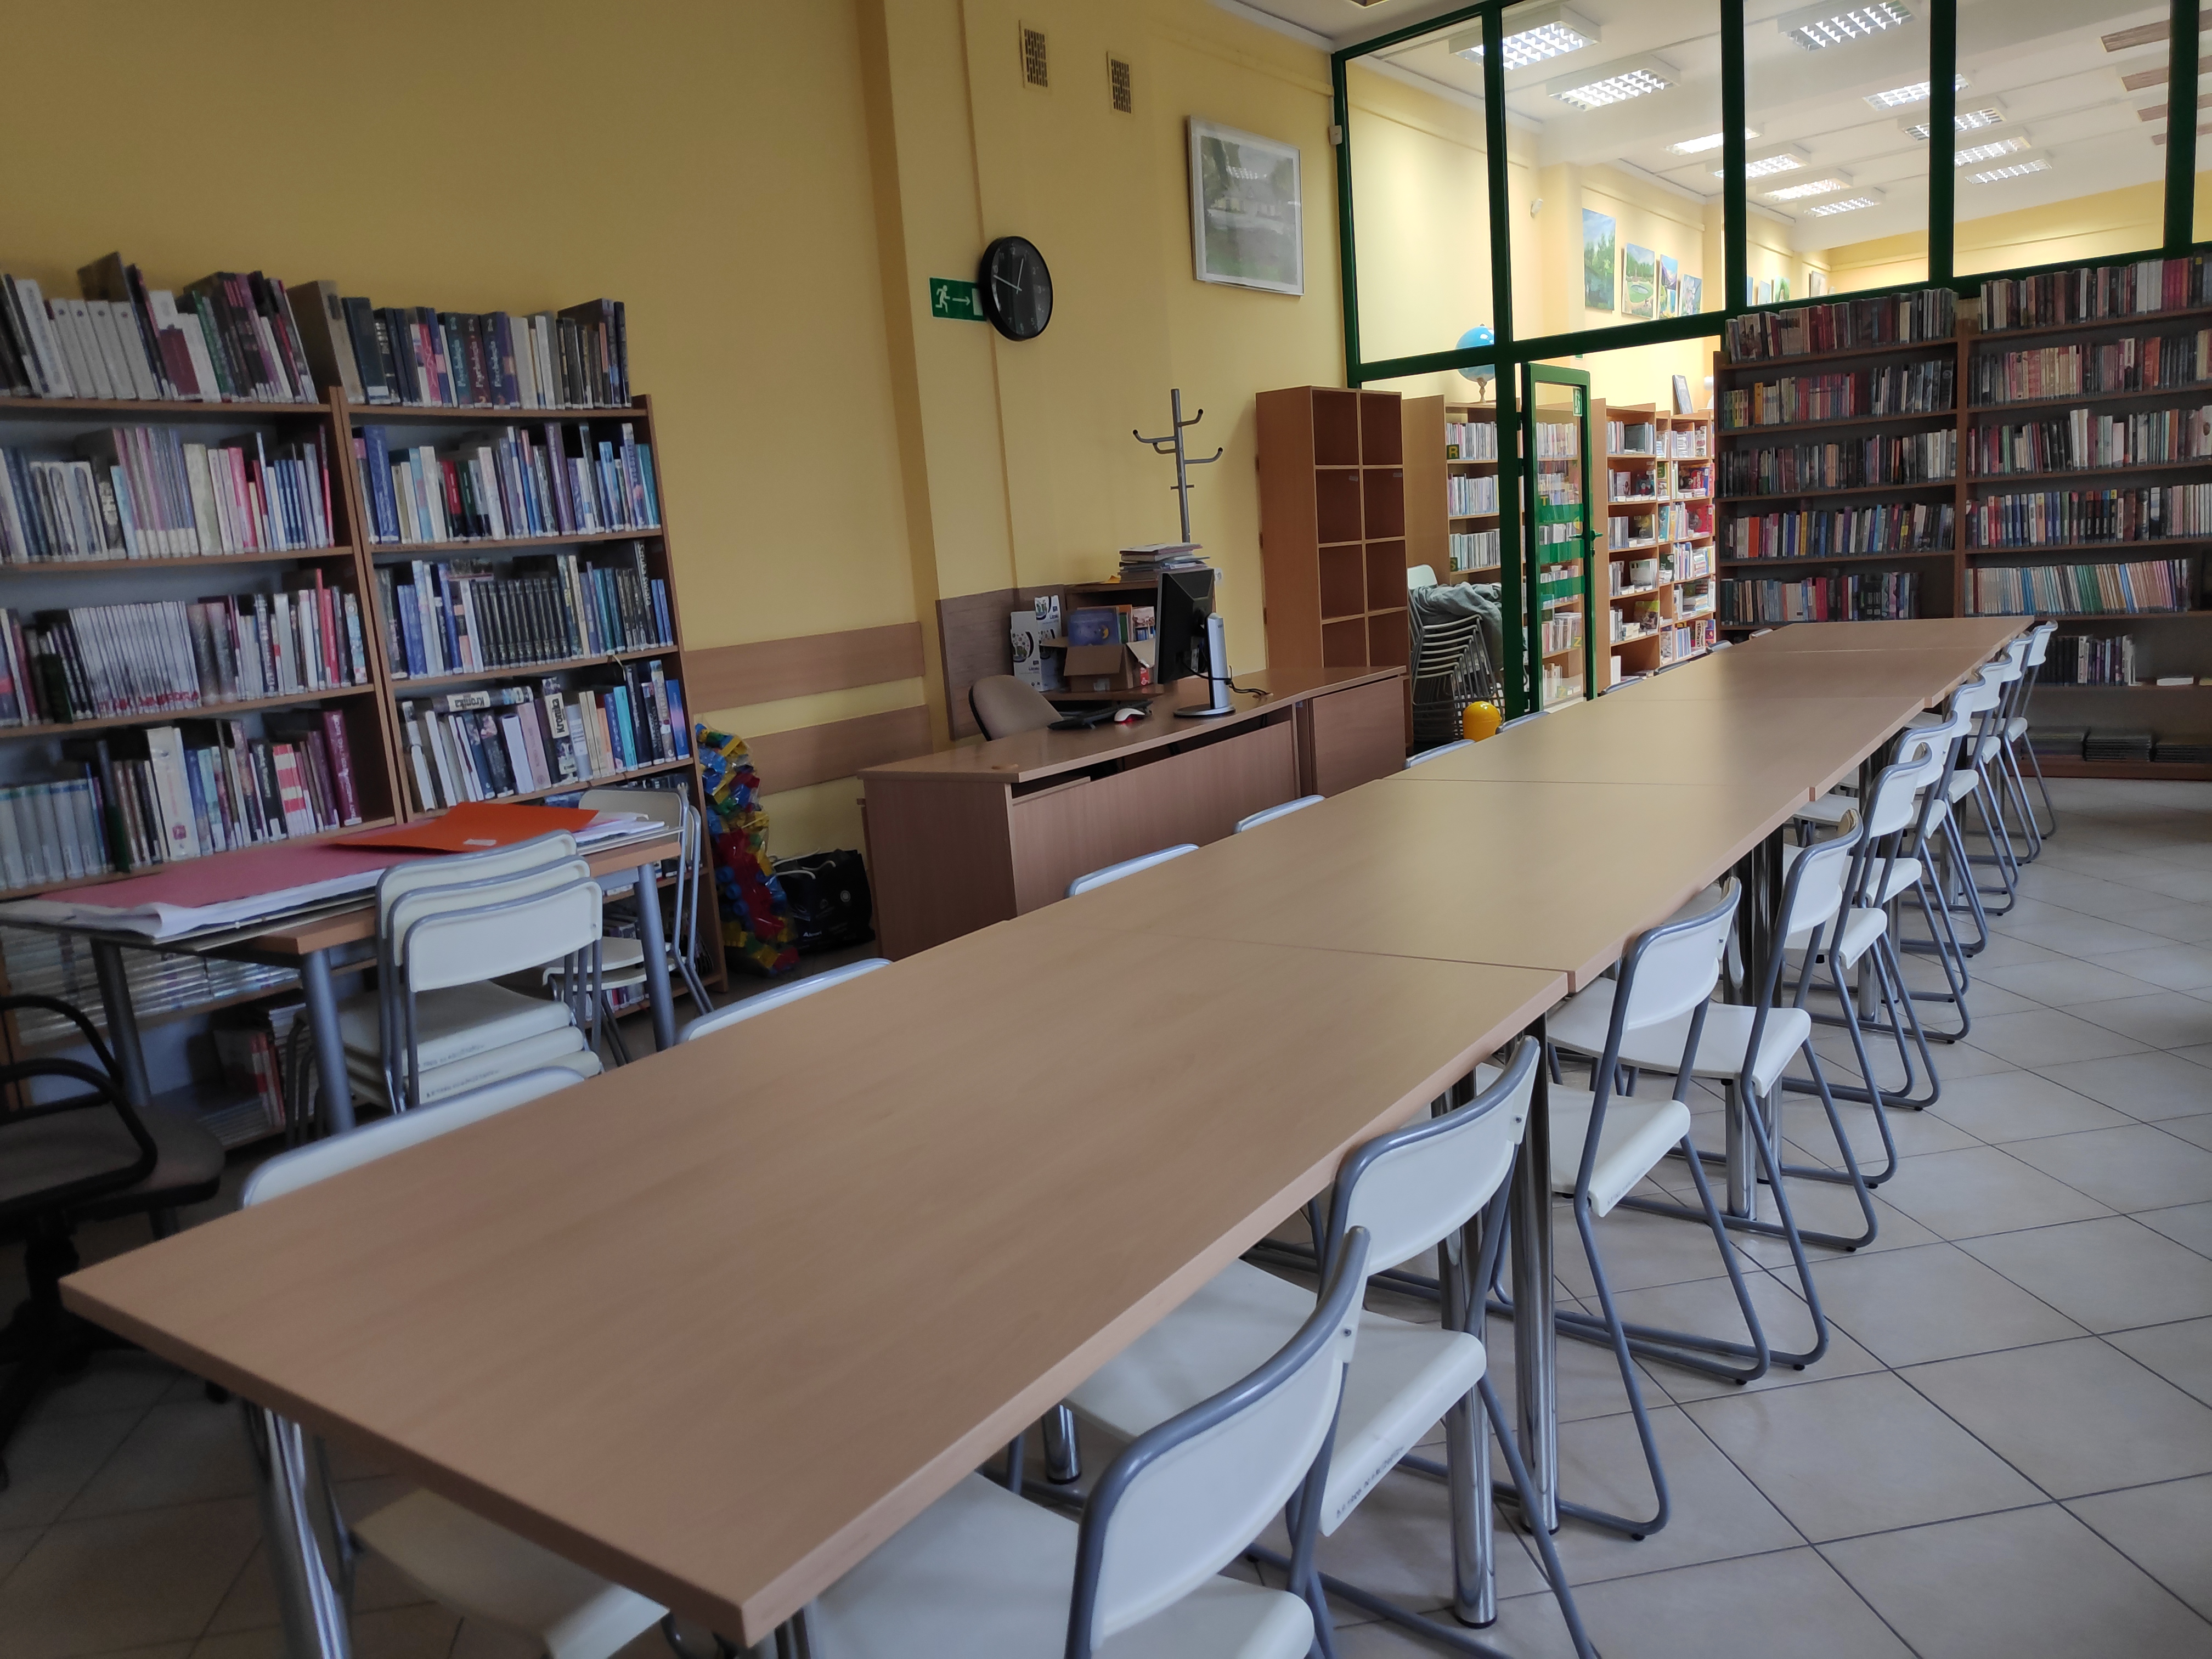 Długi stół z krzesełkami, ustawiony w sali. Pod ścianami regały z książkami.